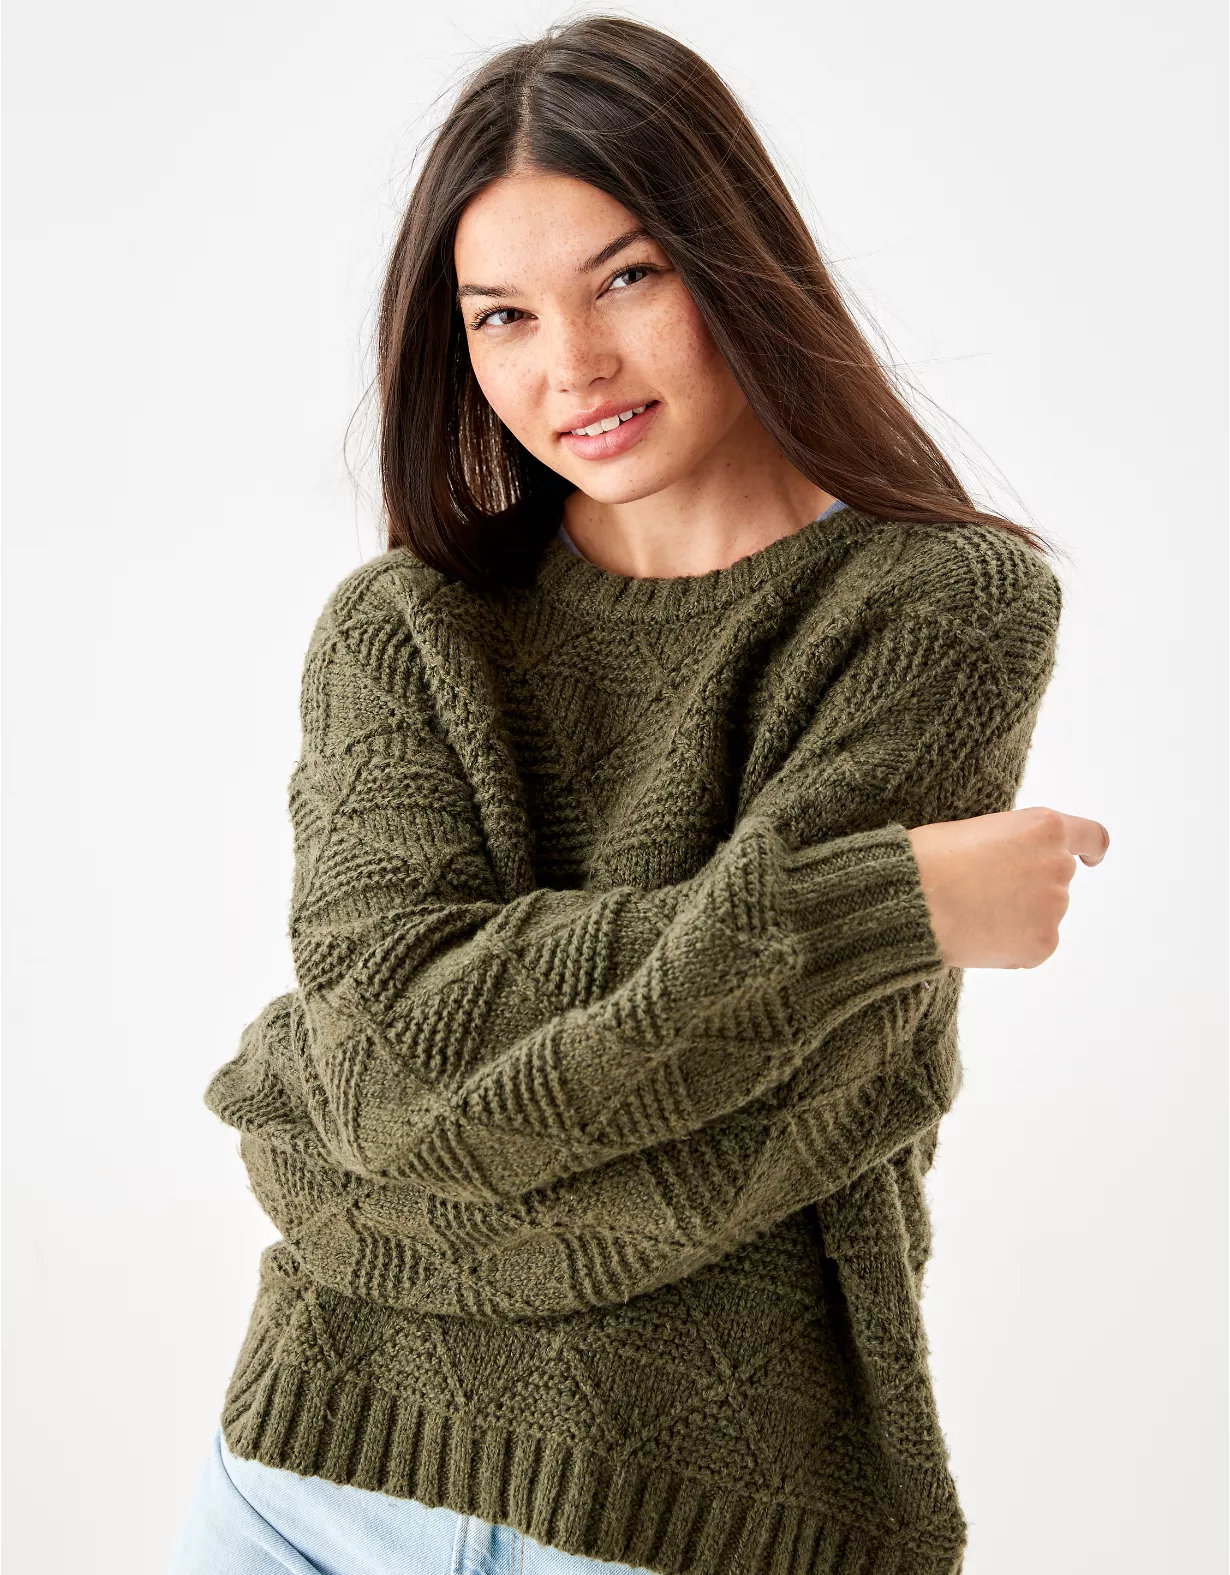 AE Mixed Stitch Sweater